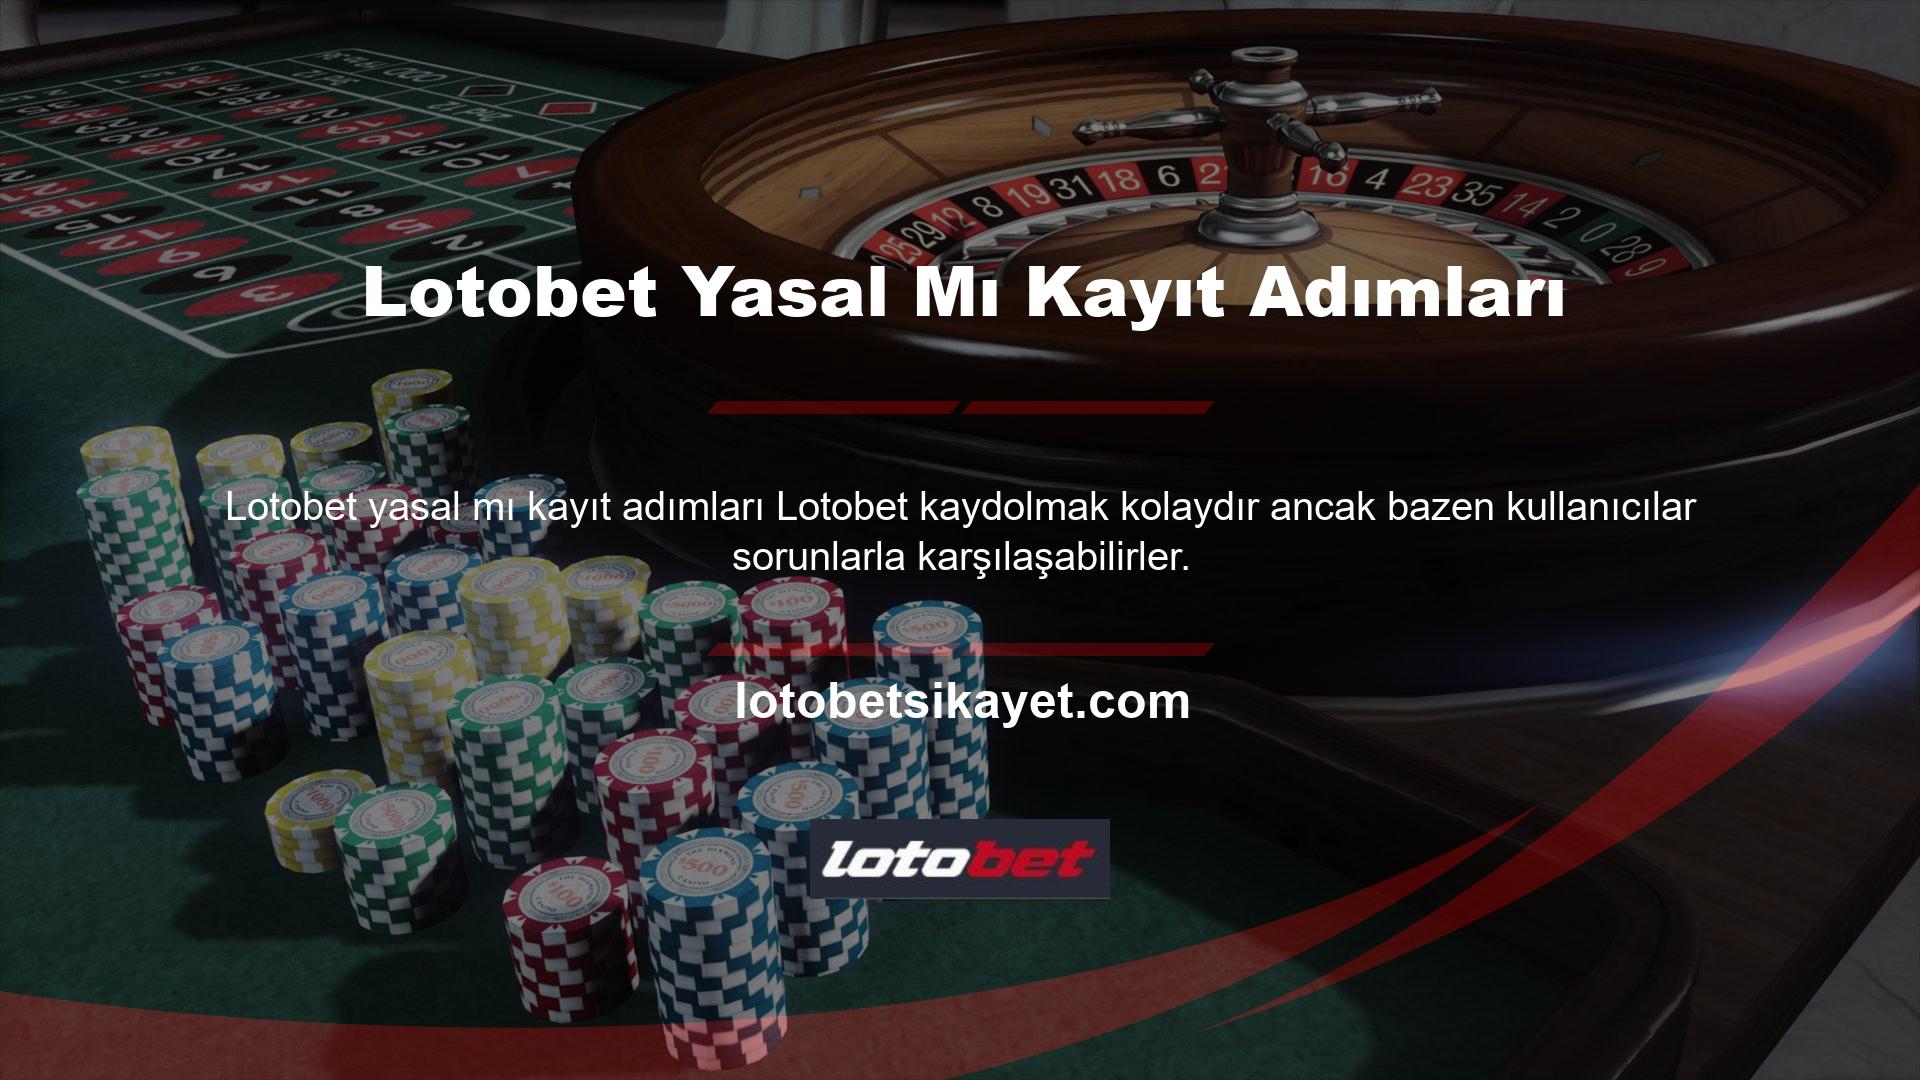 Lotobet online casino web sitesine kaydolmak için öncelikle mevcut giriş adresinizi kullanarak web sitesine giriş yapmalısınız